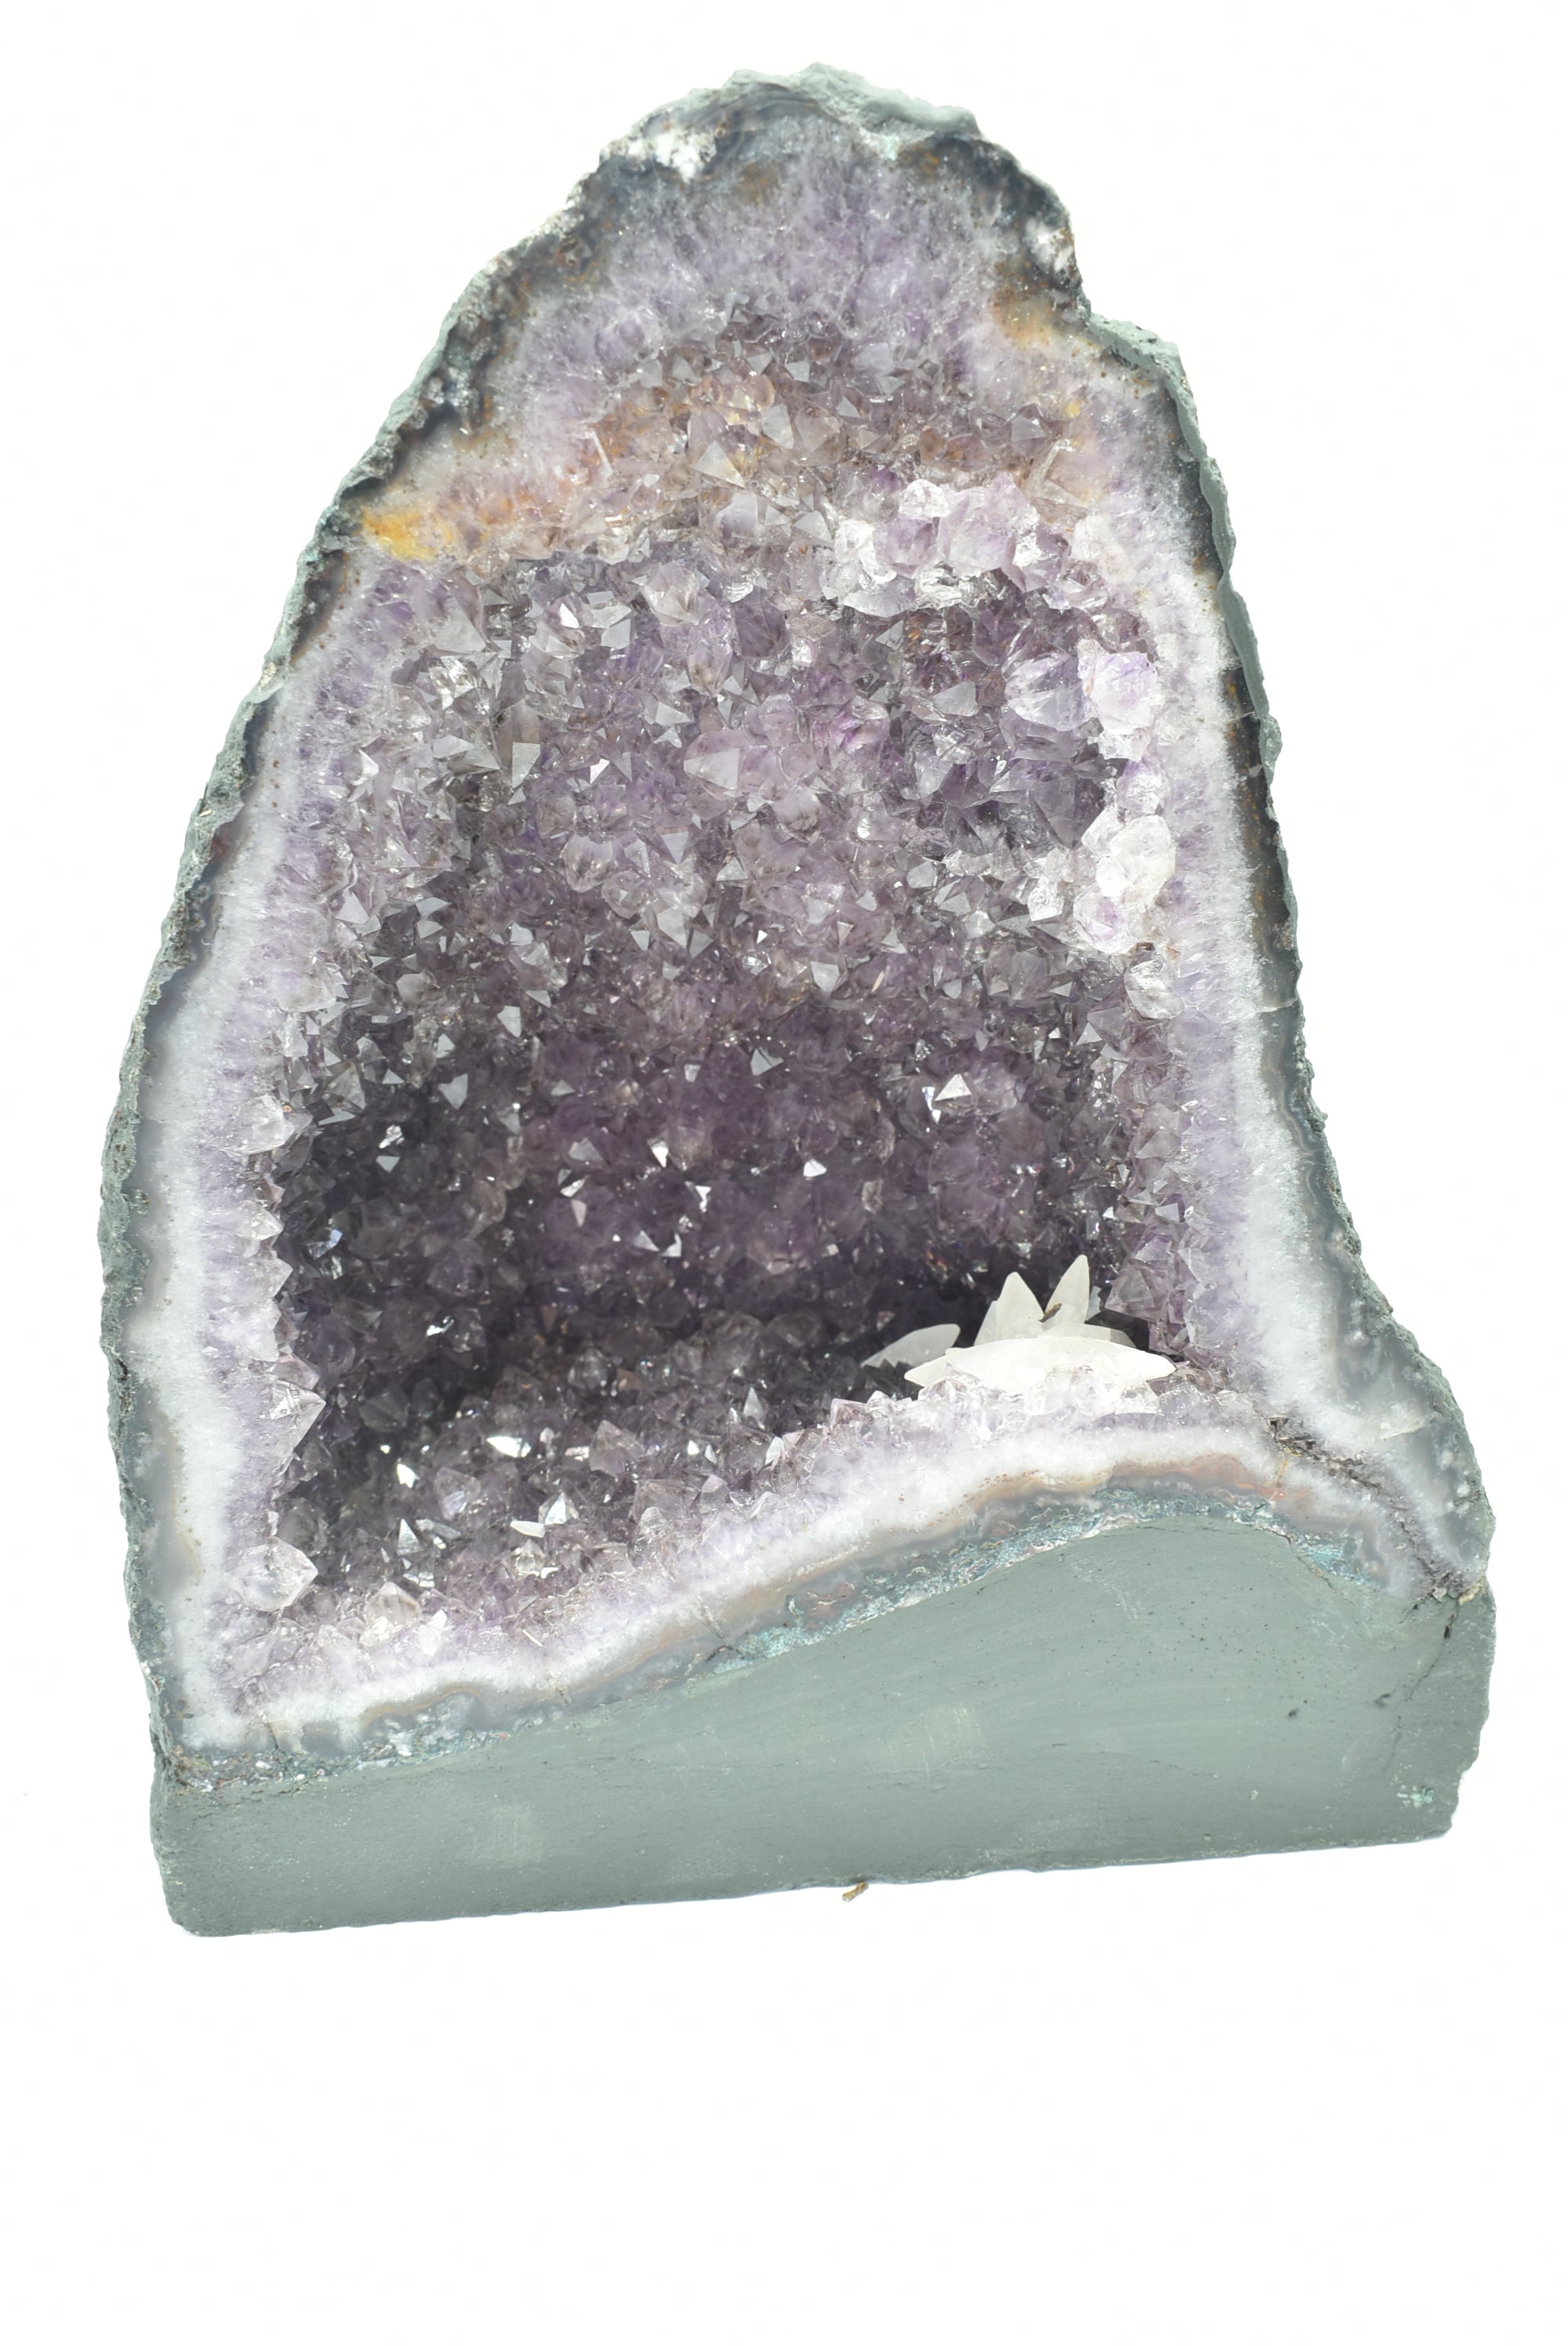 Amethyst Geode 7.8 Kg